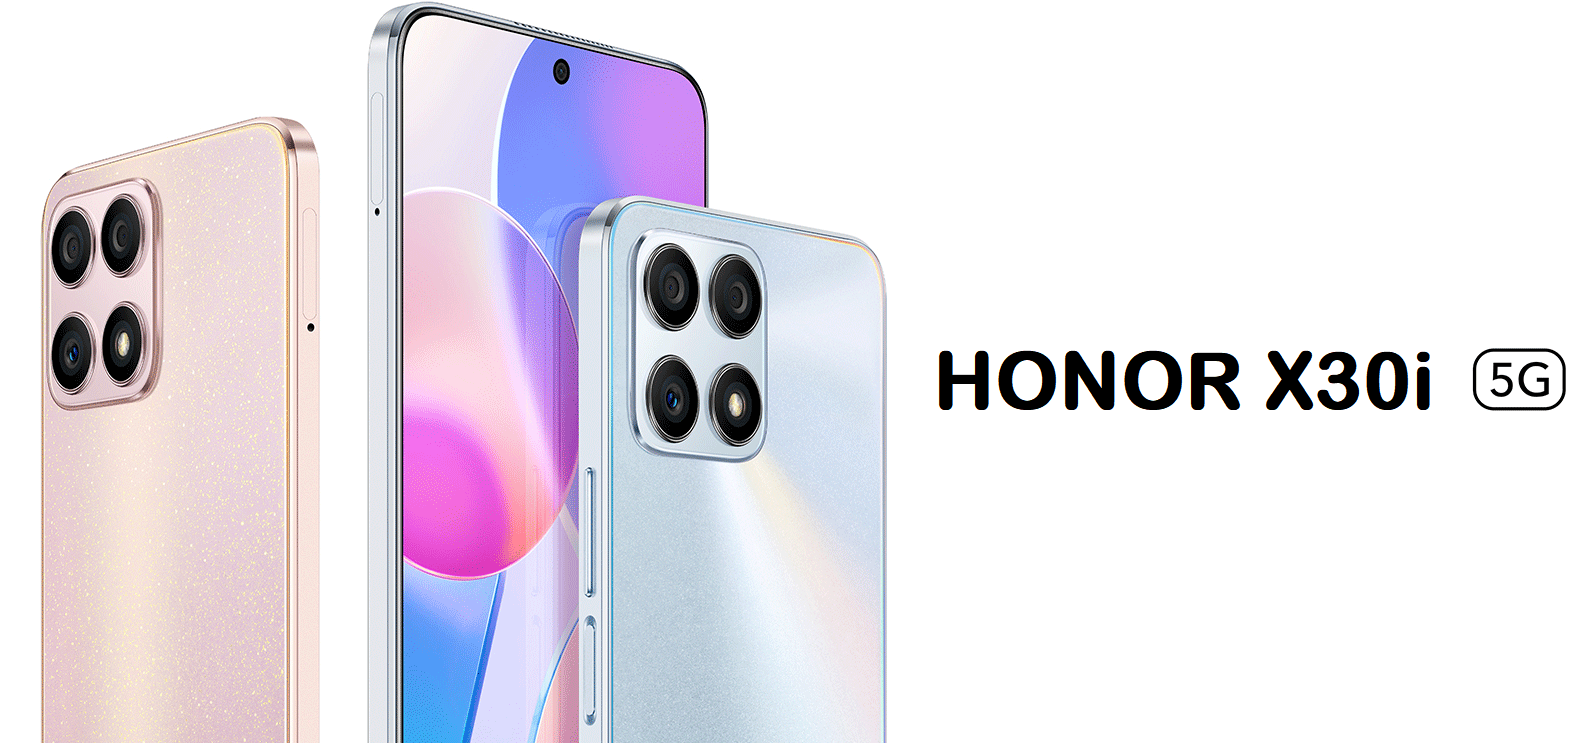 Honor X30i - Dimensity 810, 48MP aparat, Android 11 i Magic UI 5.0 w cenie od 220 dolarów